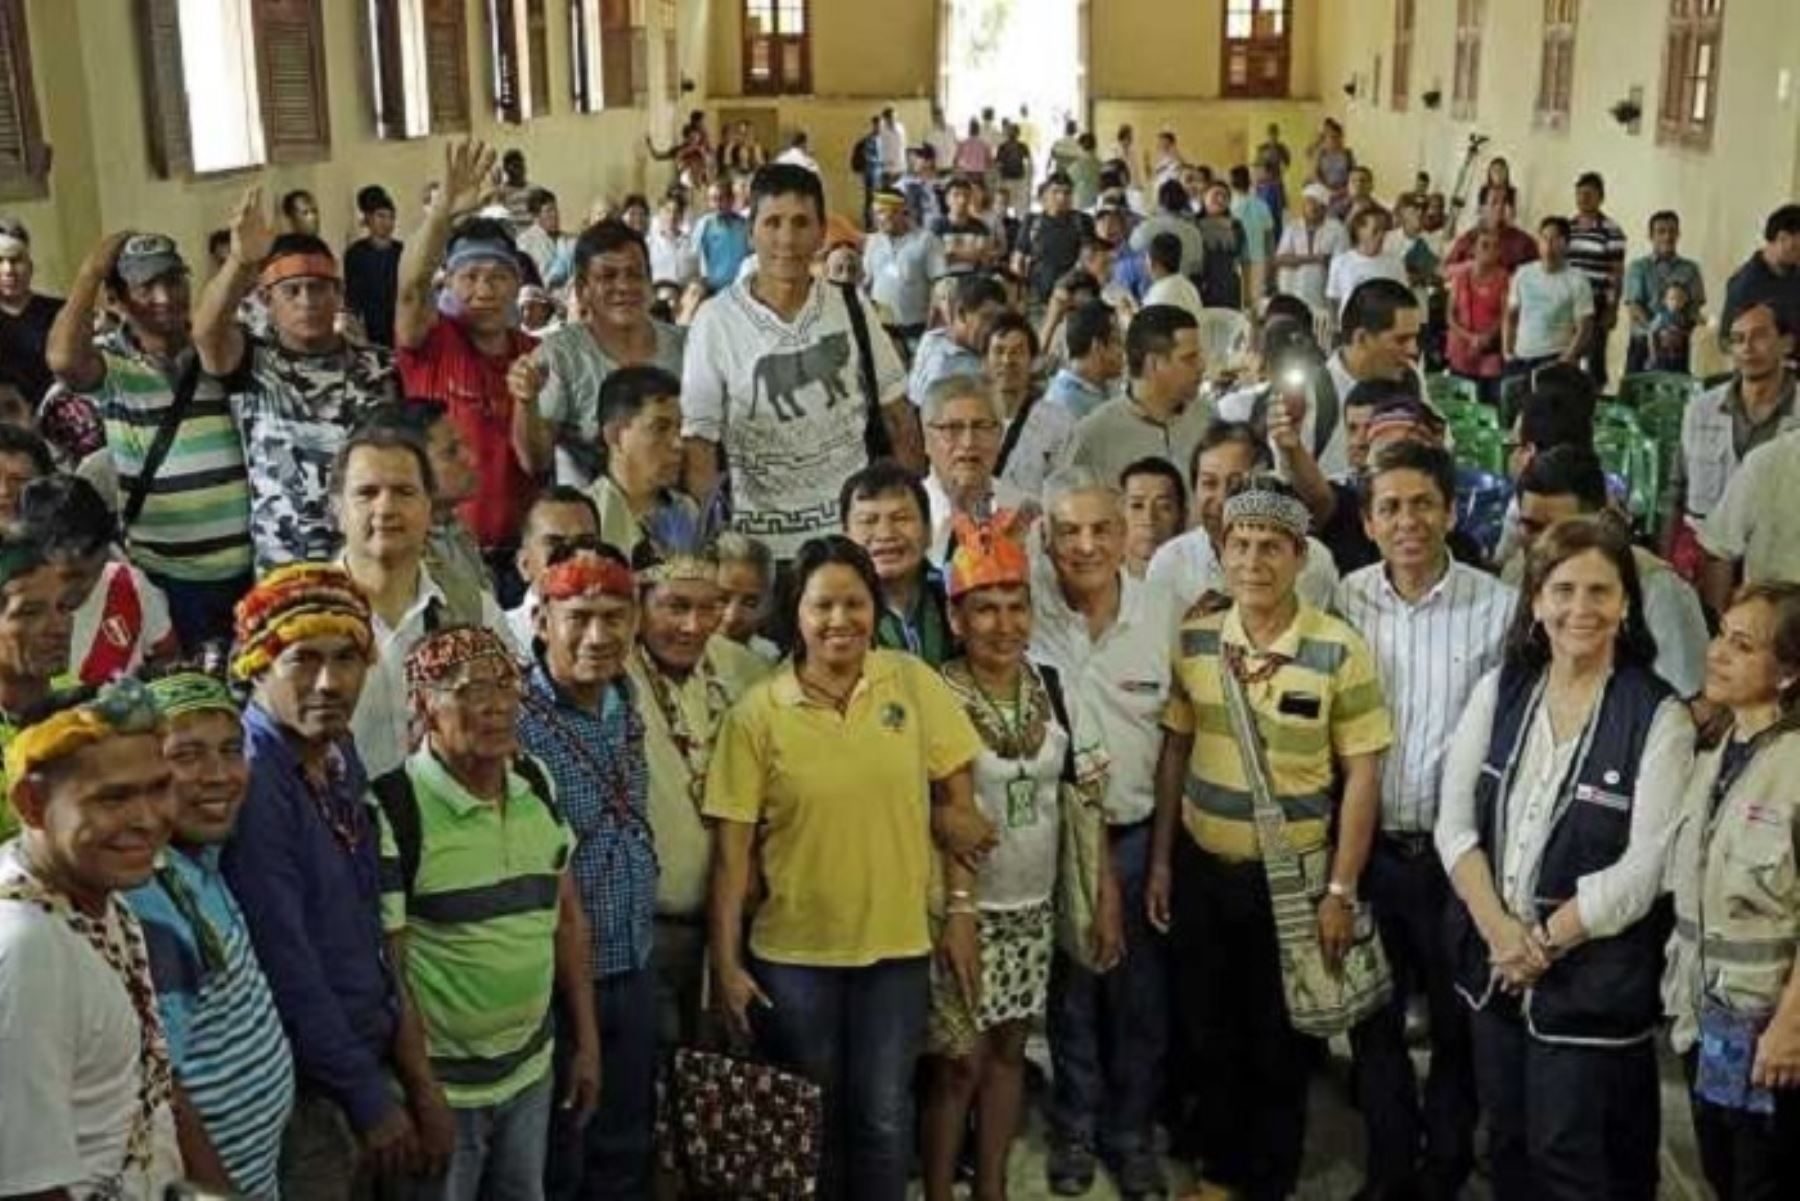 Minsa realizará una reunión técnica el 20 de junio de 2018, en Iquitos, con la participación de la Diresa Loreto y su equipo técnico, para fortalecer y complementar el plan integral de salud en las cinco cuencas amazónicas.